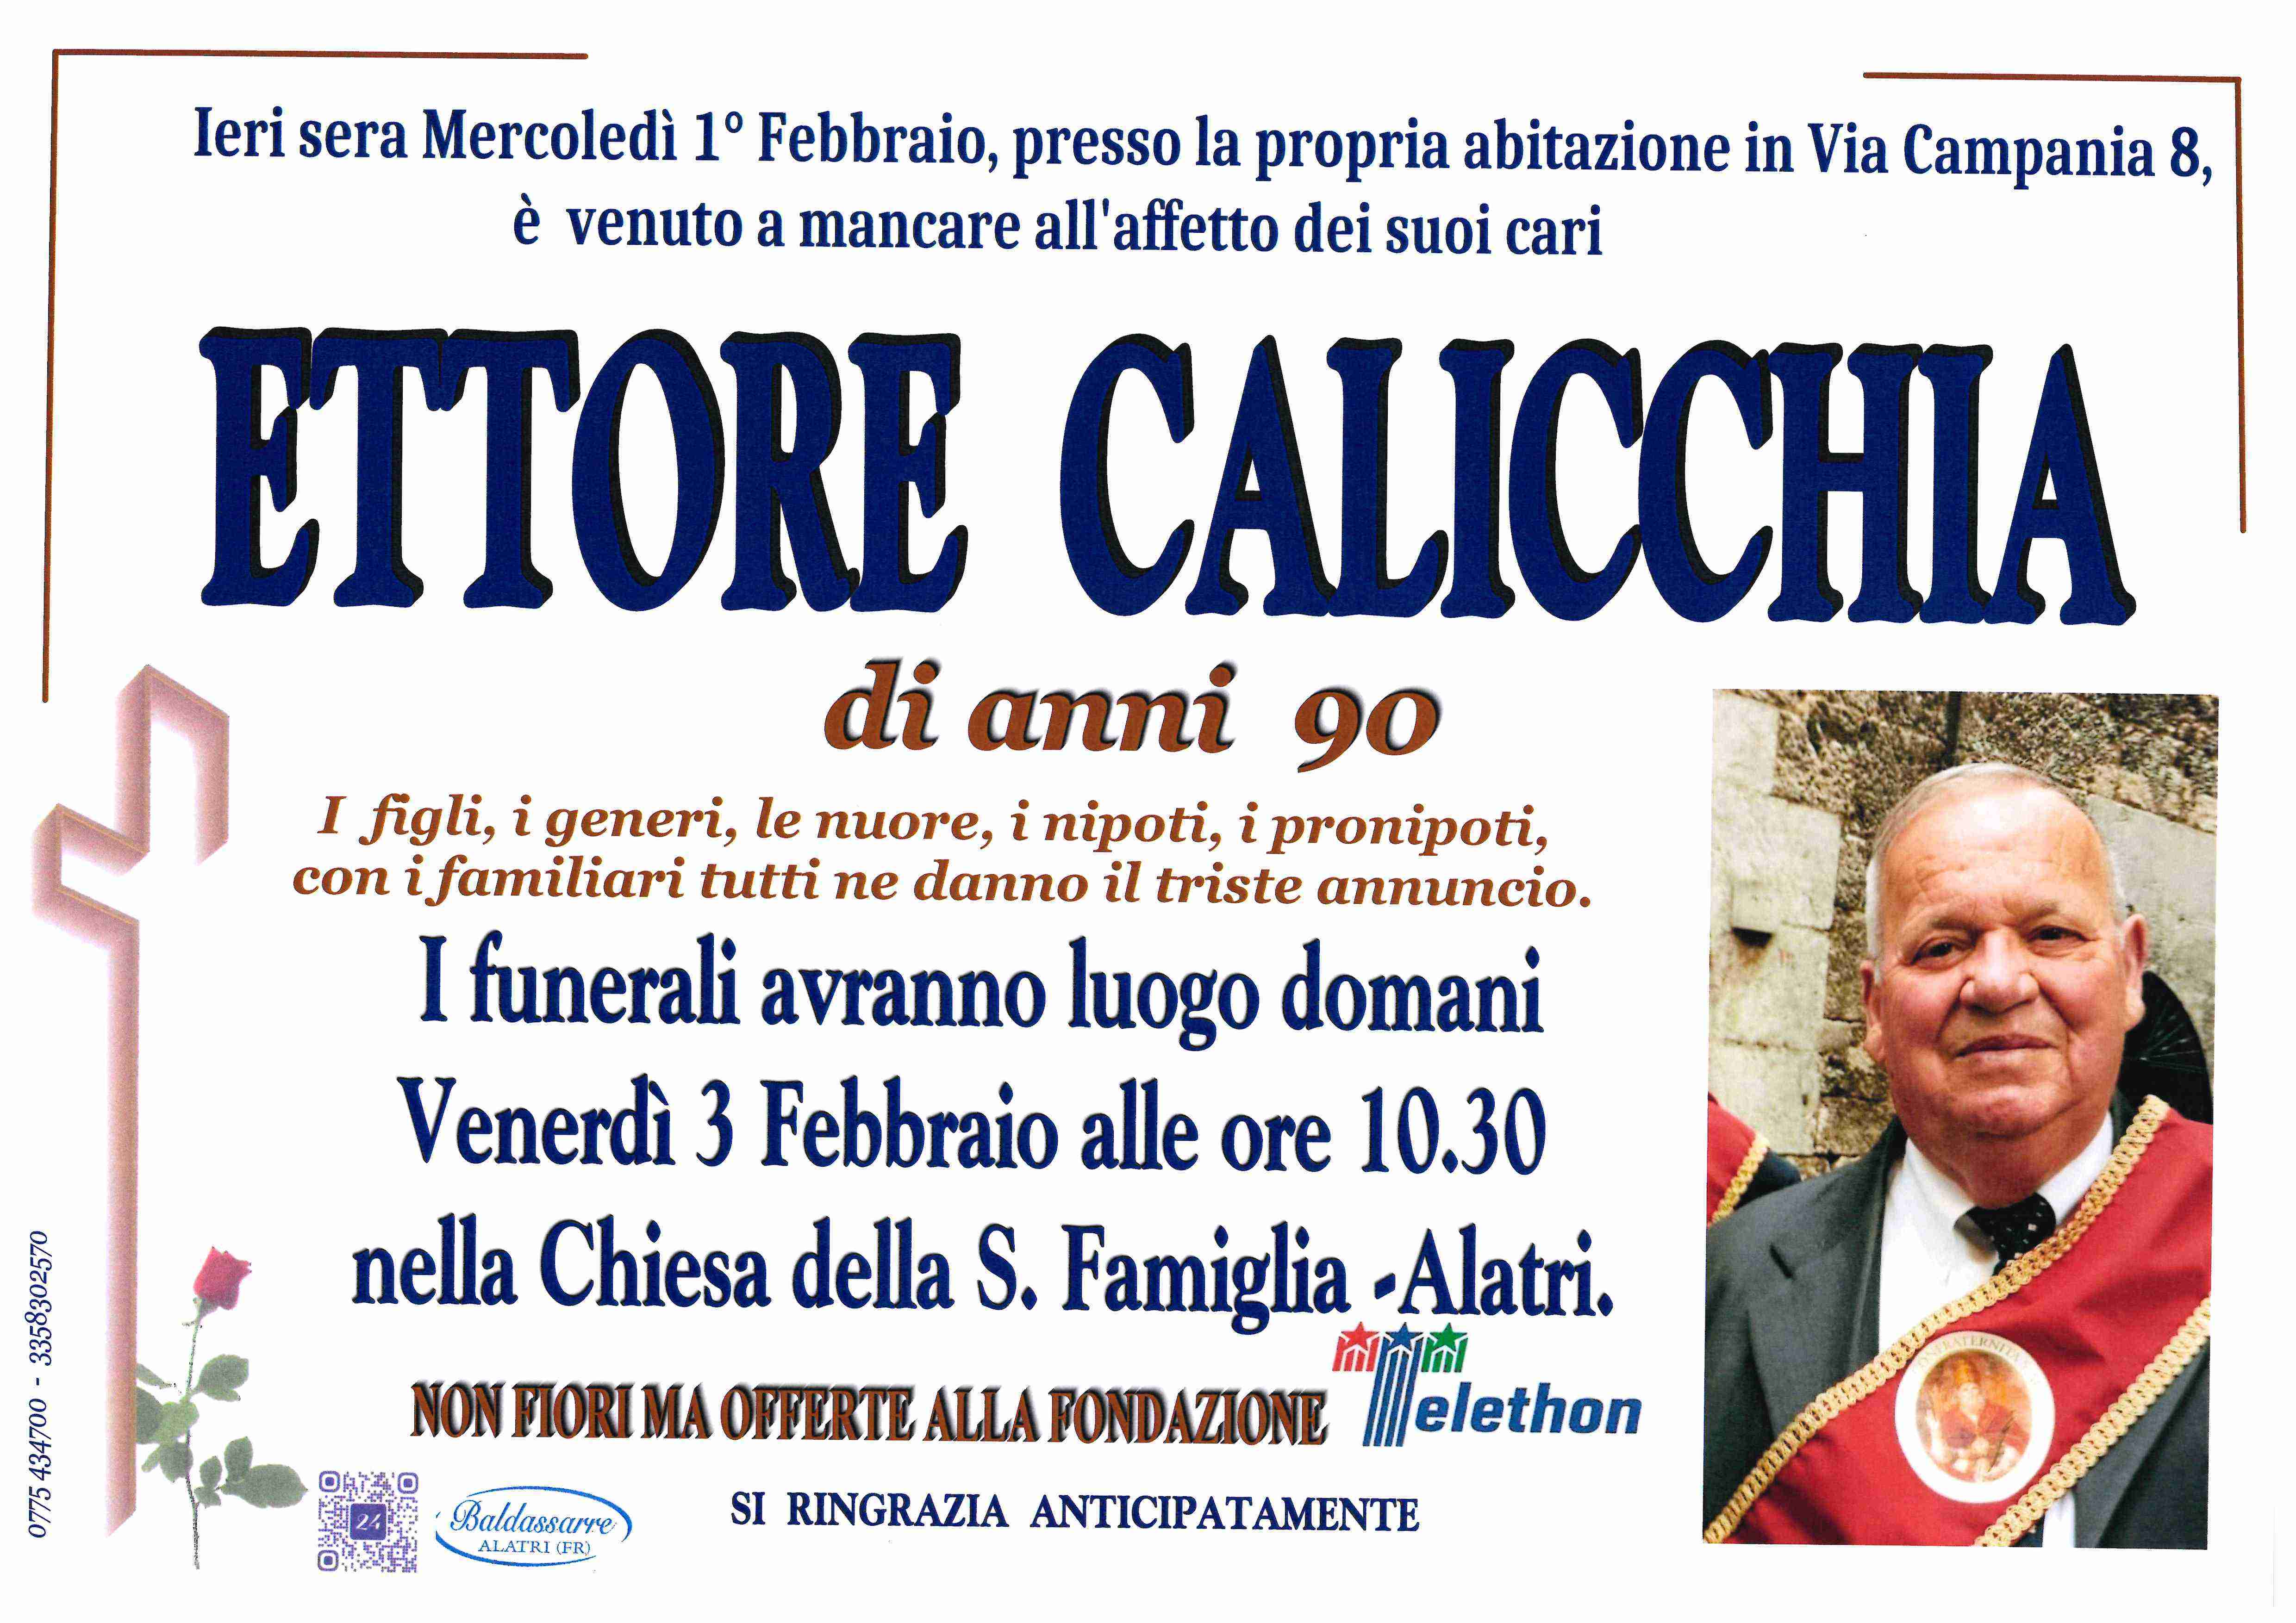 Ettore Calicchia